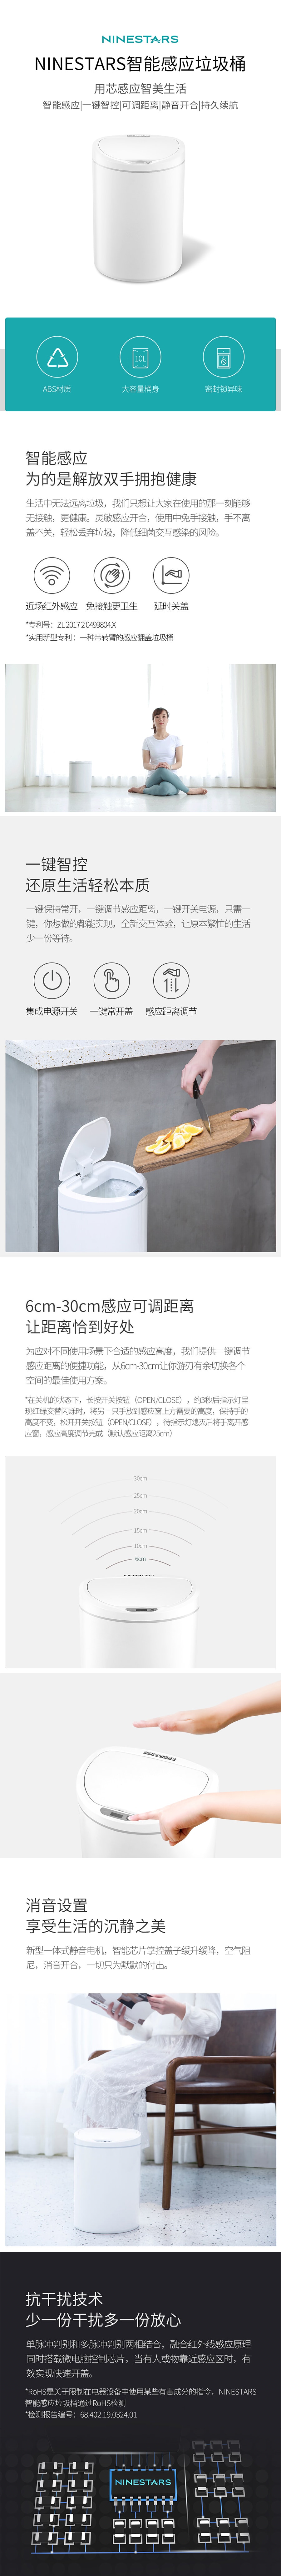 【中国直邮】小米有品 NINESTARS智能感应垃圾桶DZT-10-29S极地白10升